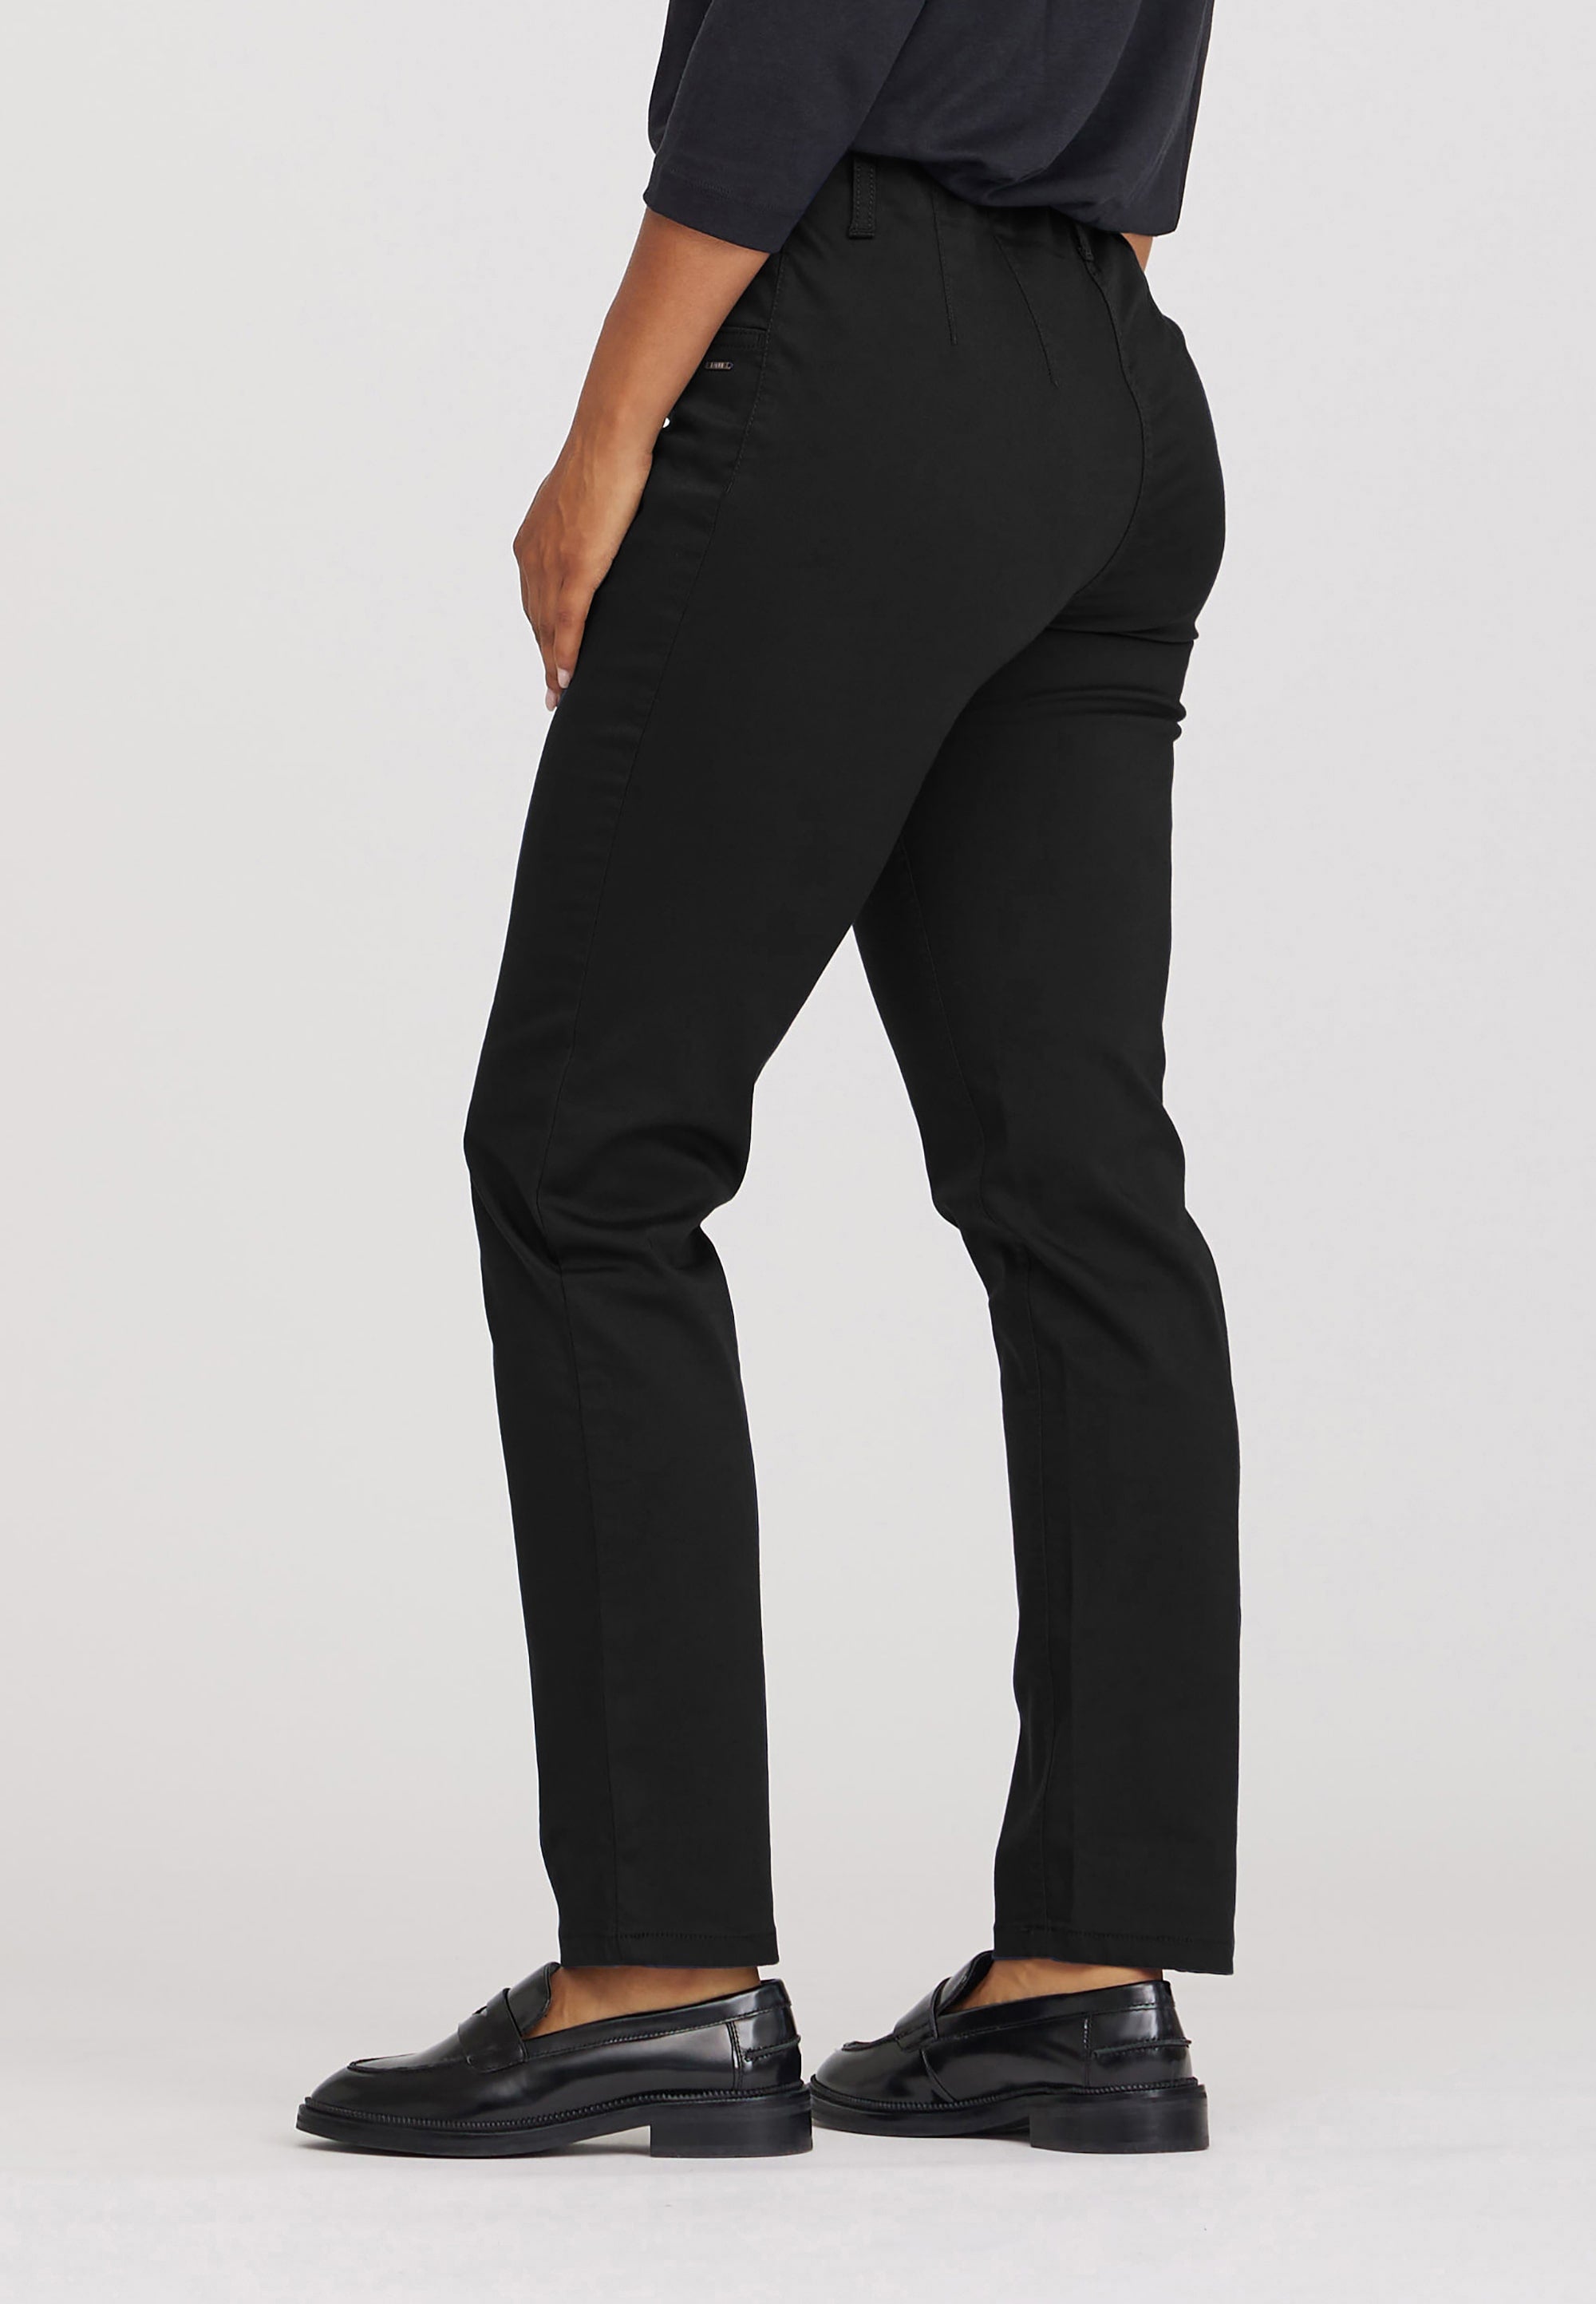 LAURIE Kelly Regular - Short Length Trousers REGULAR 99000 Black